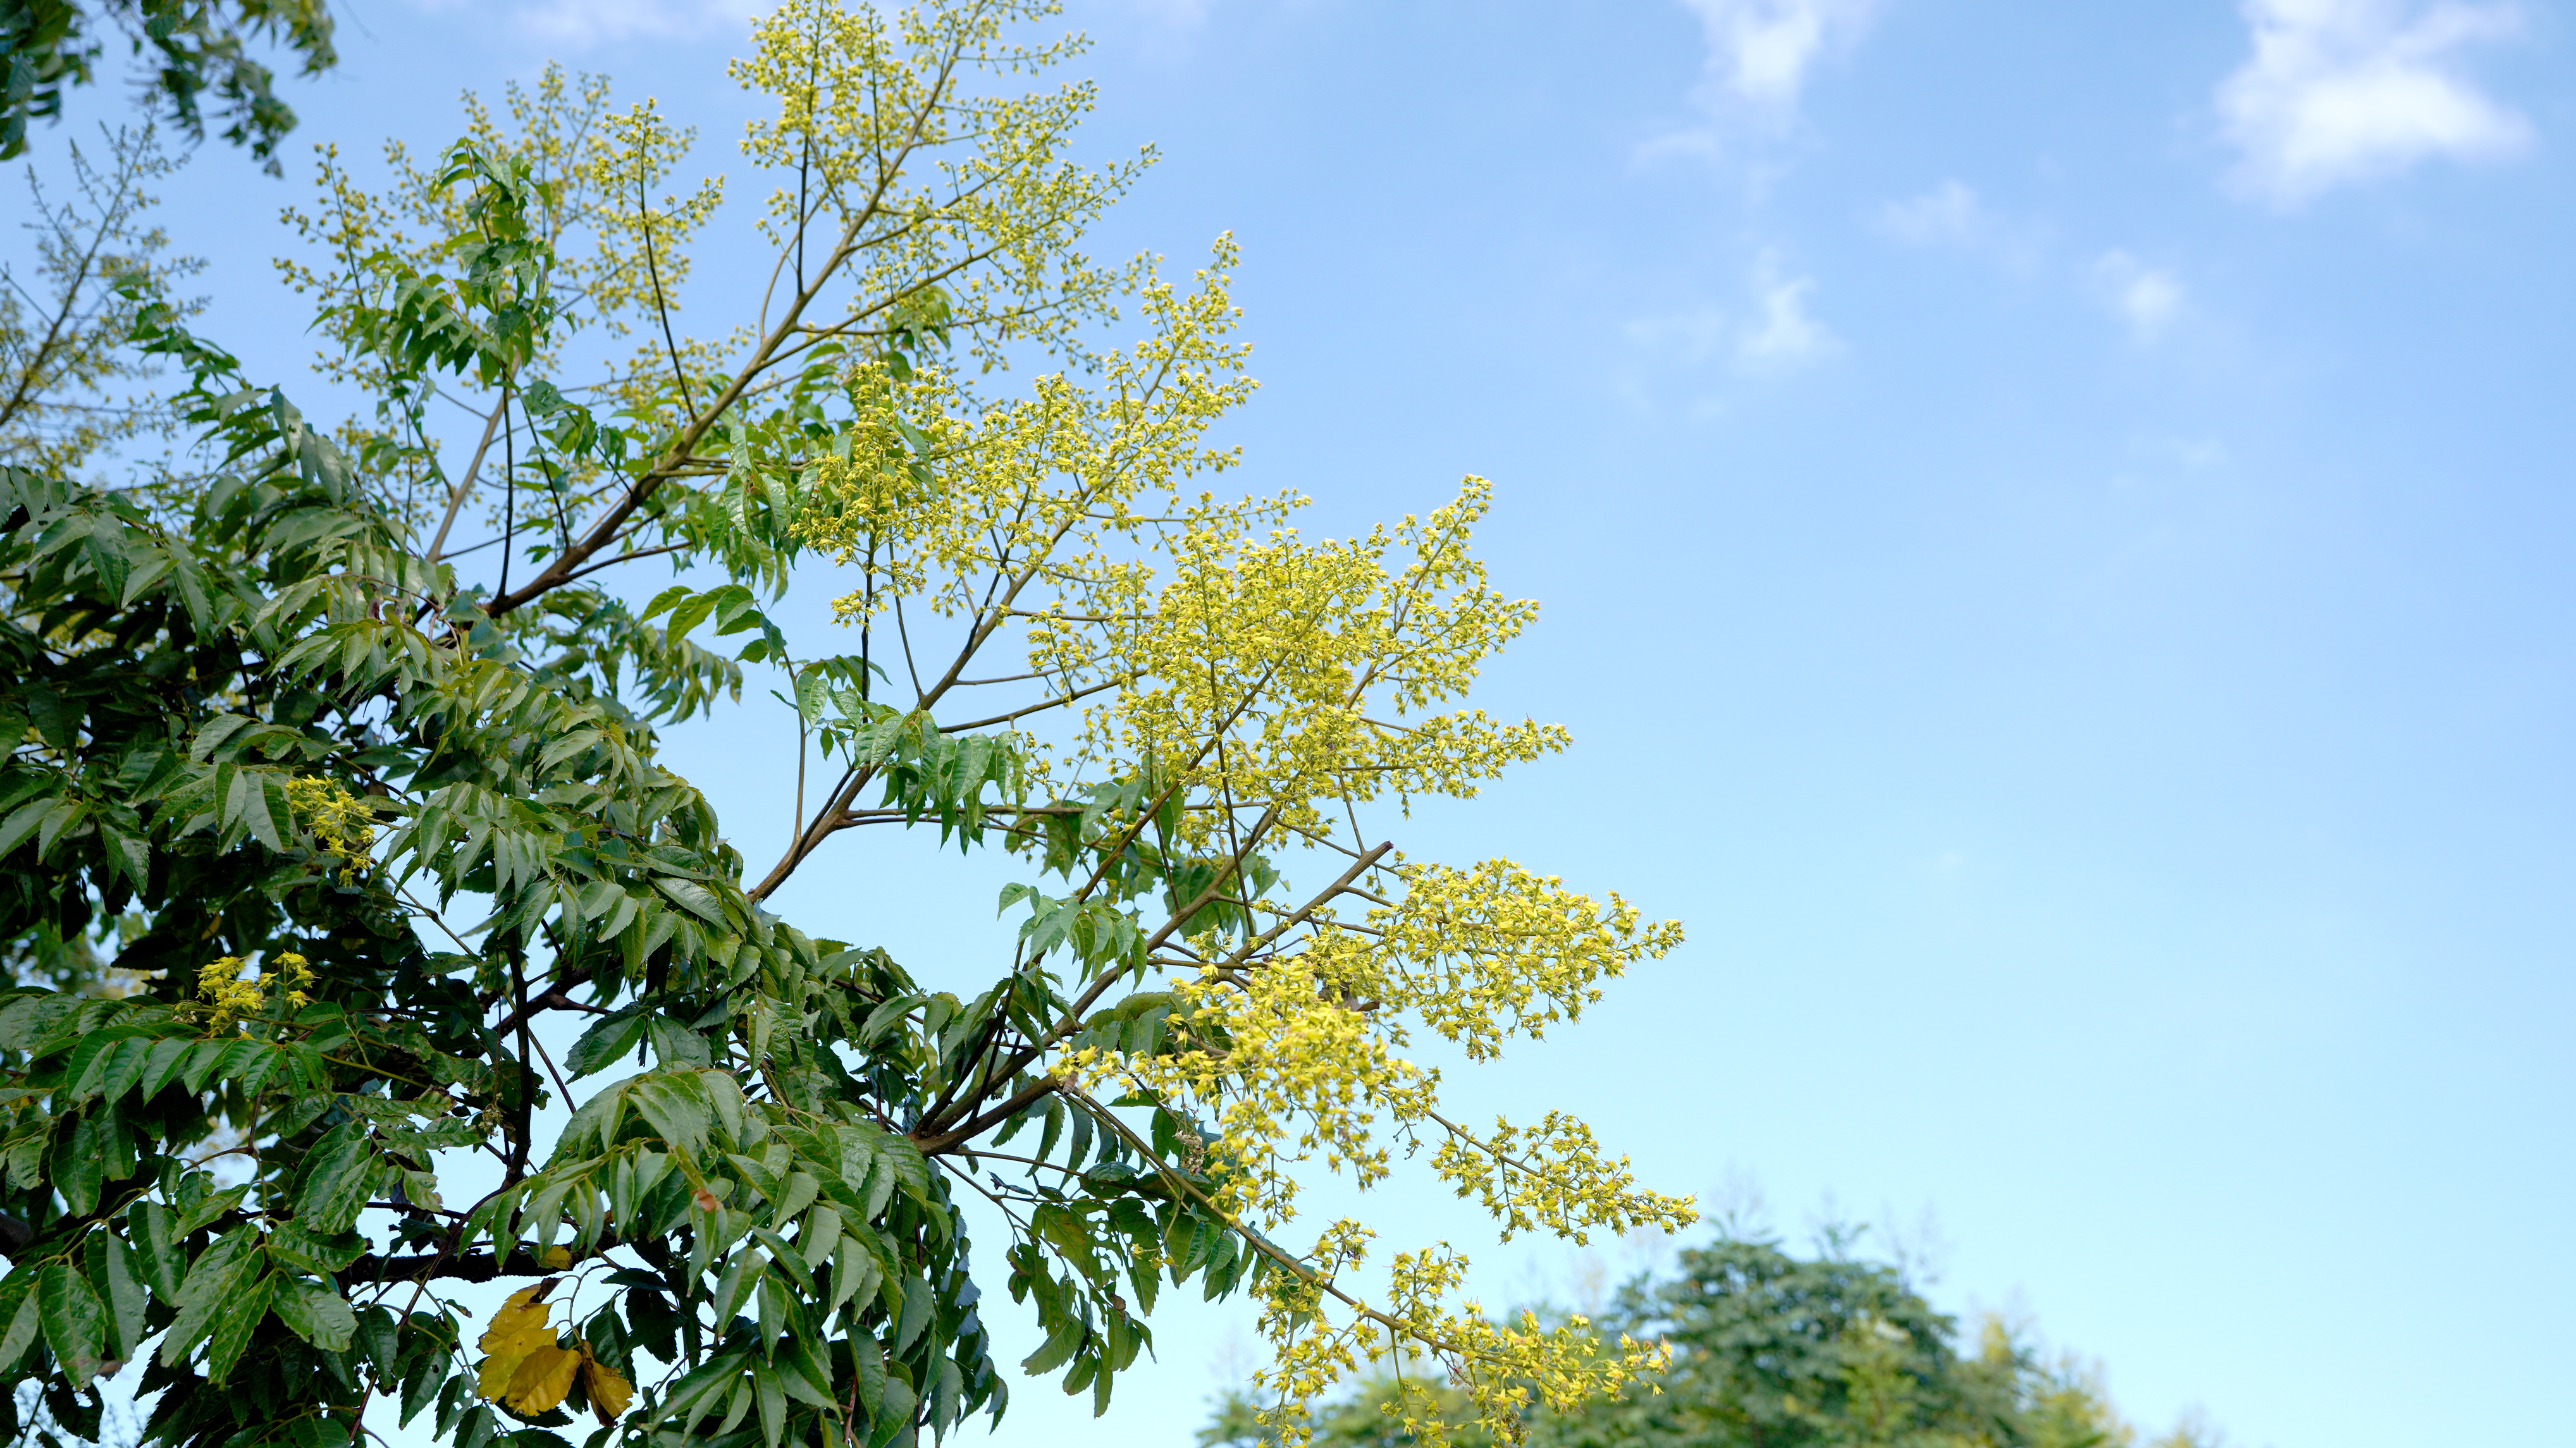 臺灣欒樹金黃色的花朵與藍天白雲相互輝映